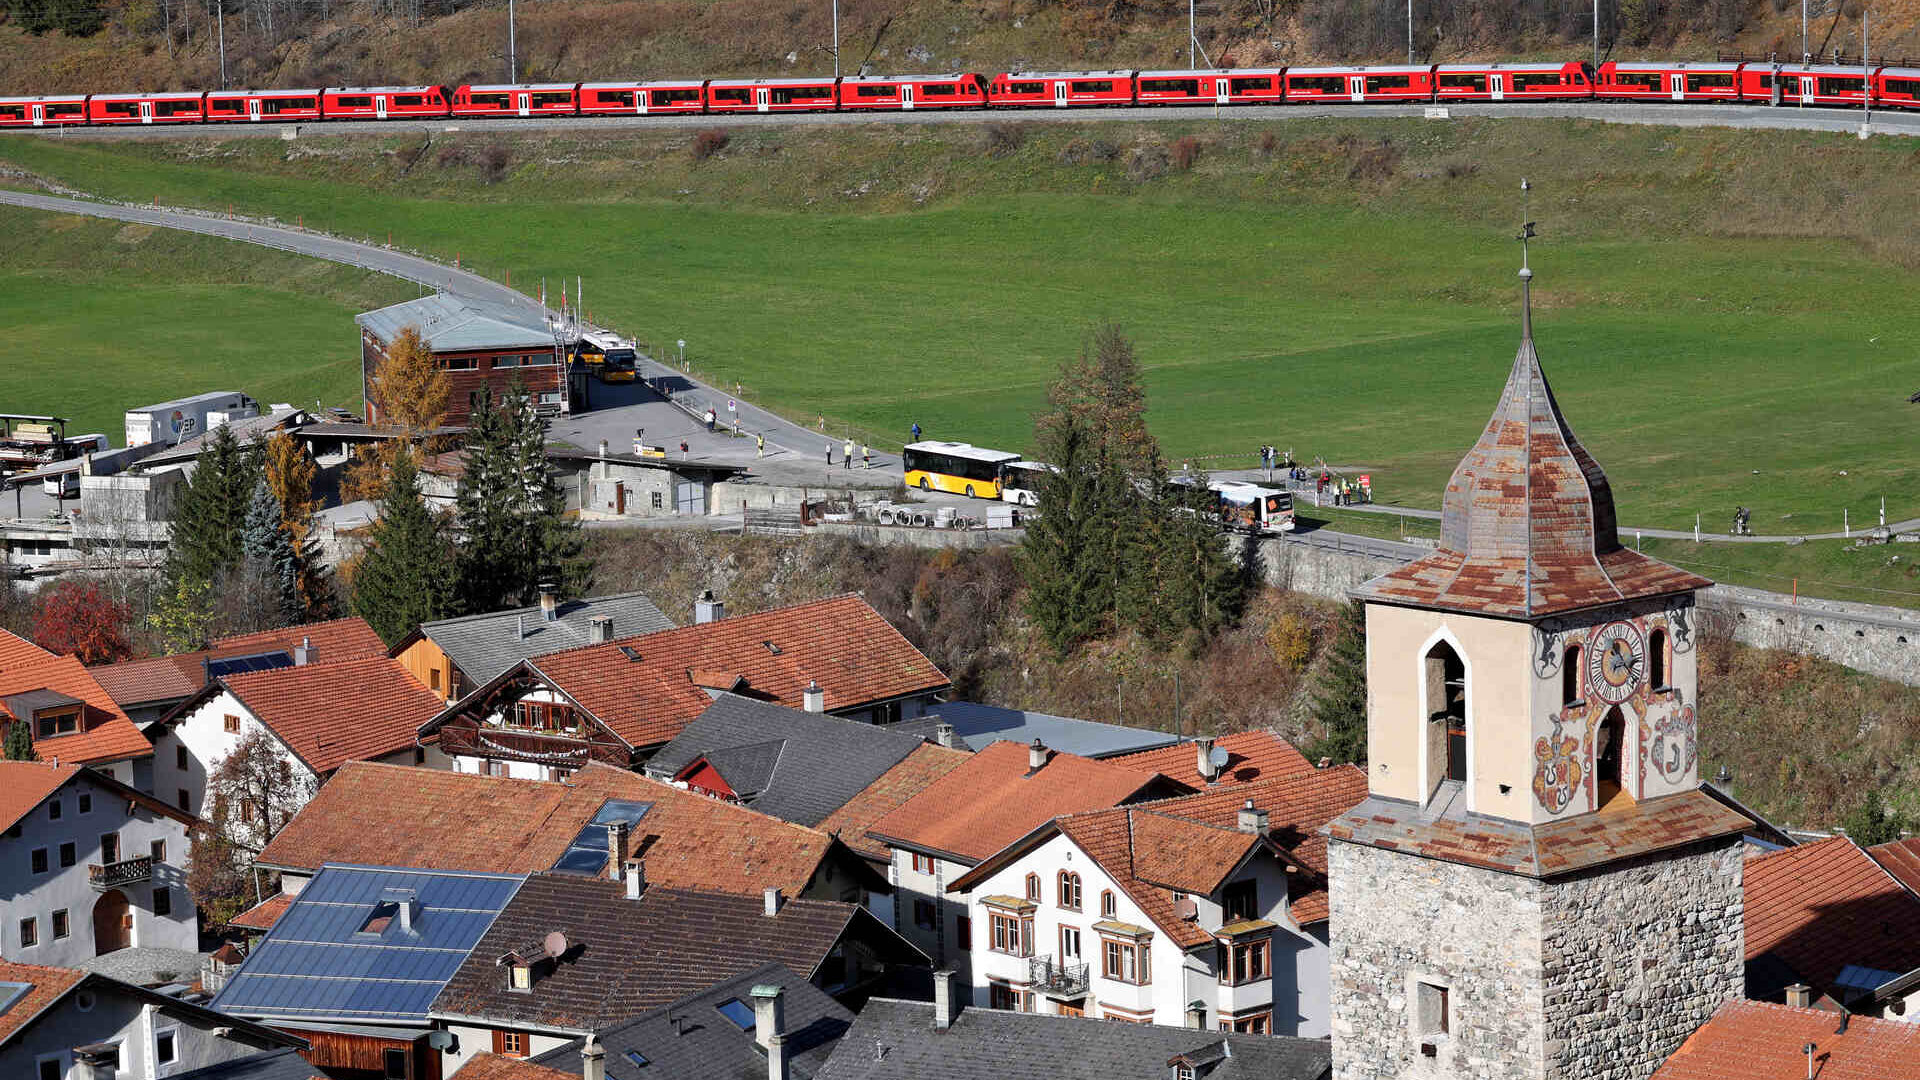 Самый длинный в мире узкоколейный поезд на линии Альбула Ретийской железной дороги в Швейцарии, 29 октября 2022 года (Фото: Энди Меттлер/Swiss-Image)